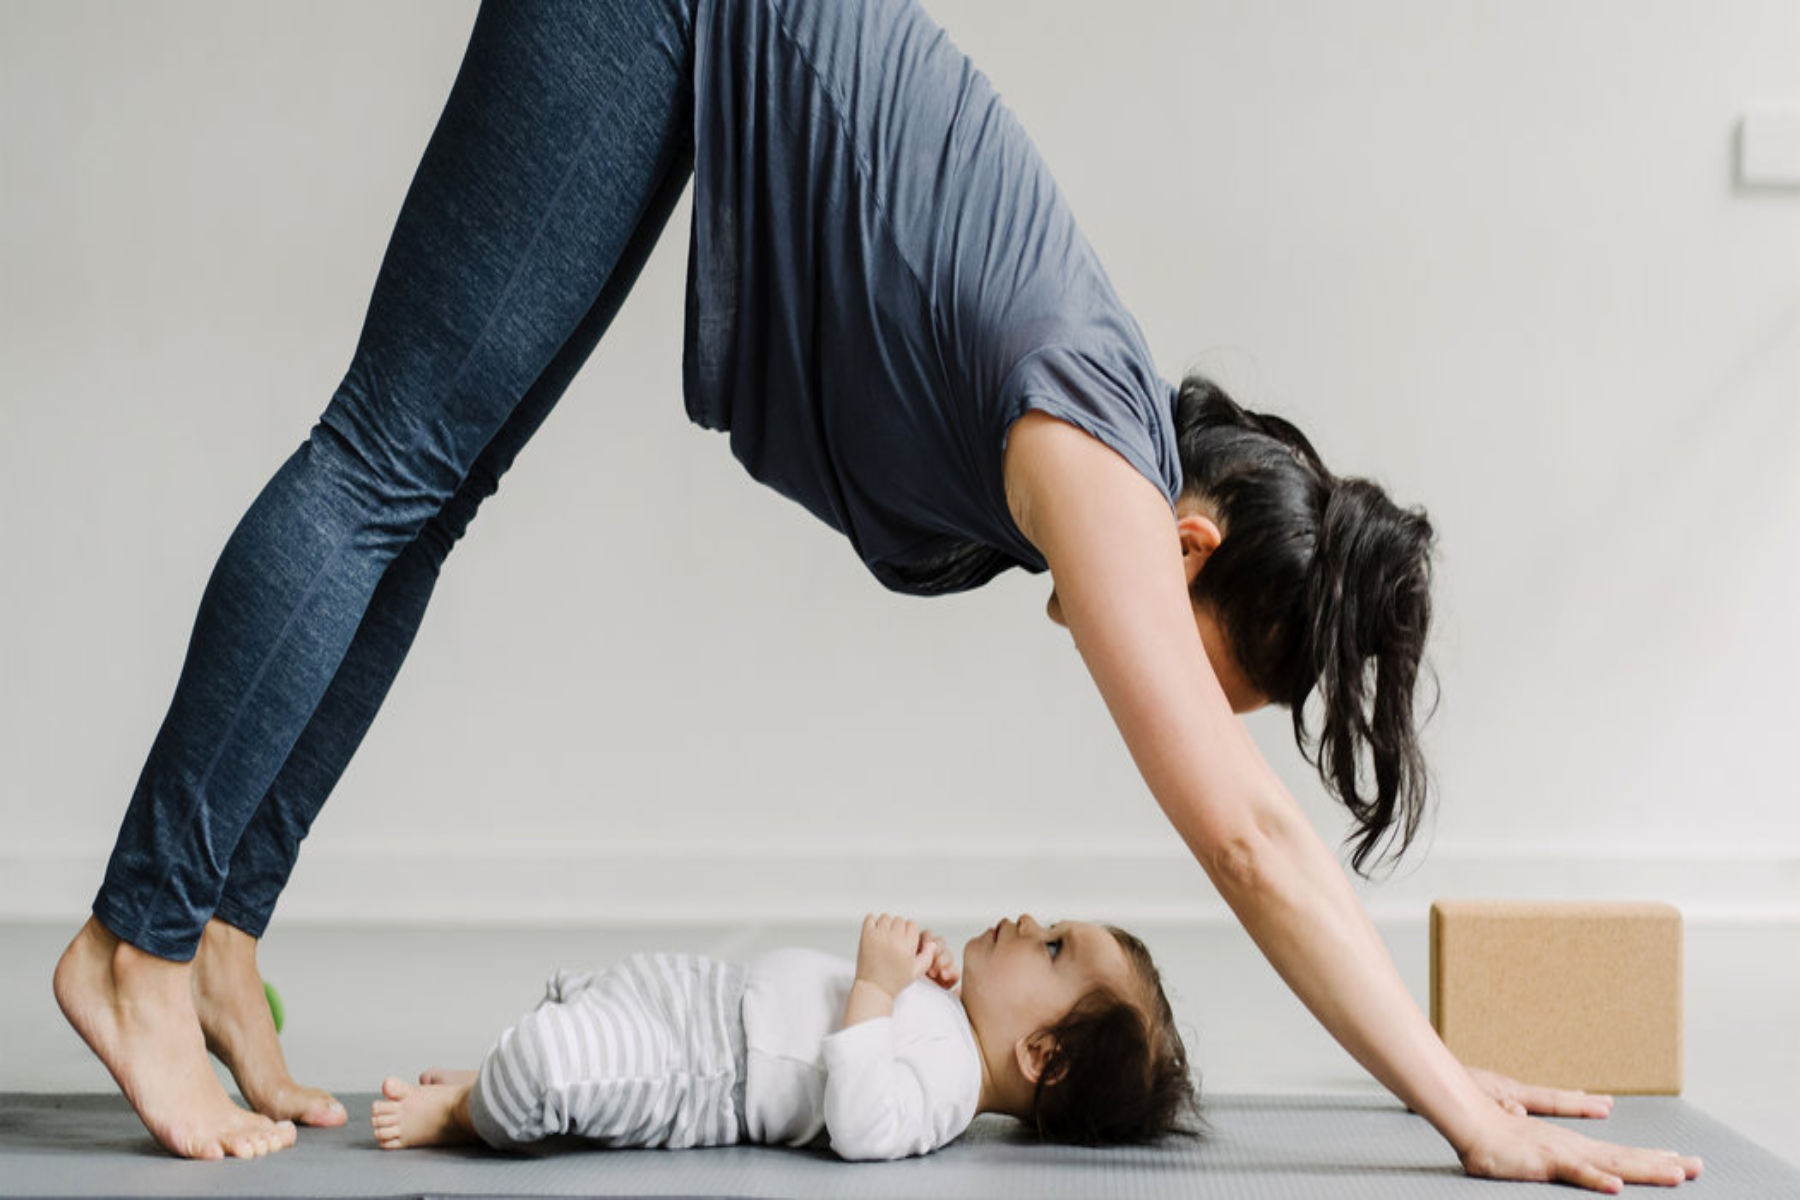 Μητέρες ασκήσεις: Οι ασκήσεις που πρέπει να ξέρουν οι νέες μητέρες μετά τον τοκετό